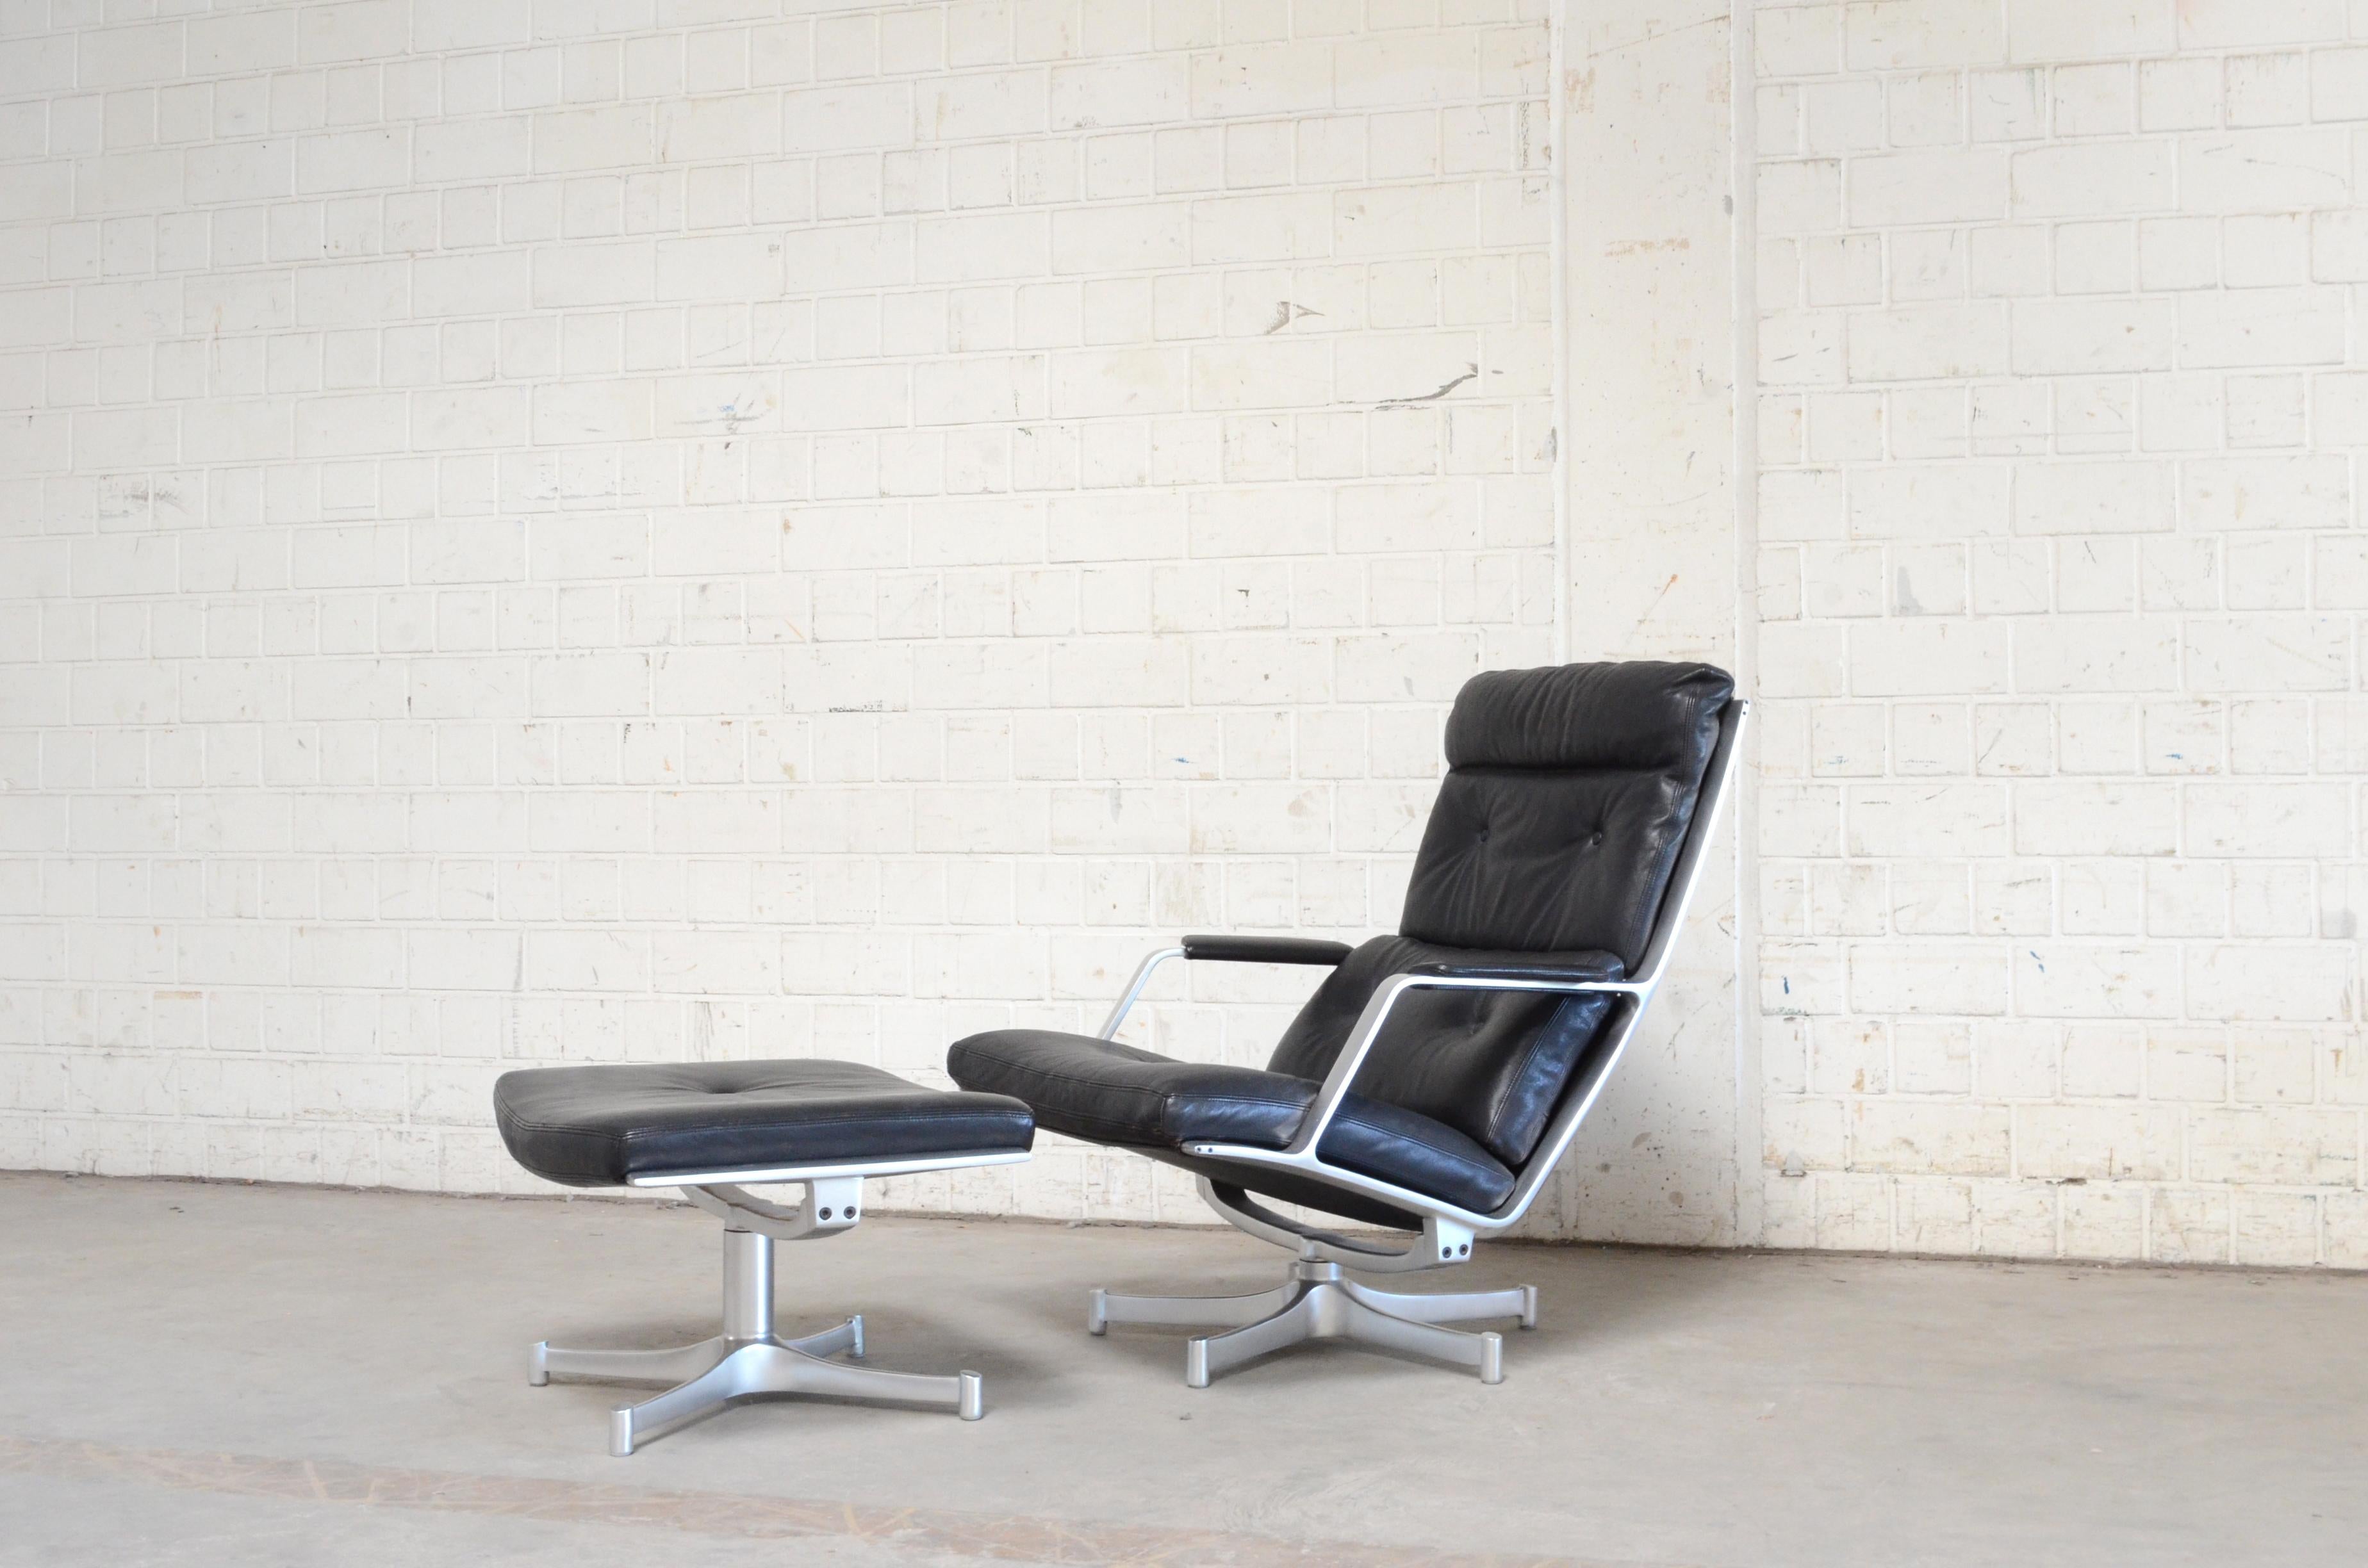 Le FK 85 a été réalisé par Jorgen Kastholm et Preben Fabricius pour Kill International
Le fauteuil de salon et l'ottoman ont un cadre en aluminium pivotant et un cuir aniline noir de qualité supérieure.
avec un beau toucher doux.
Il est dans un